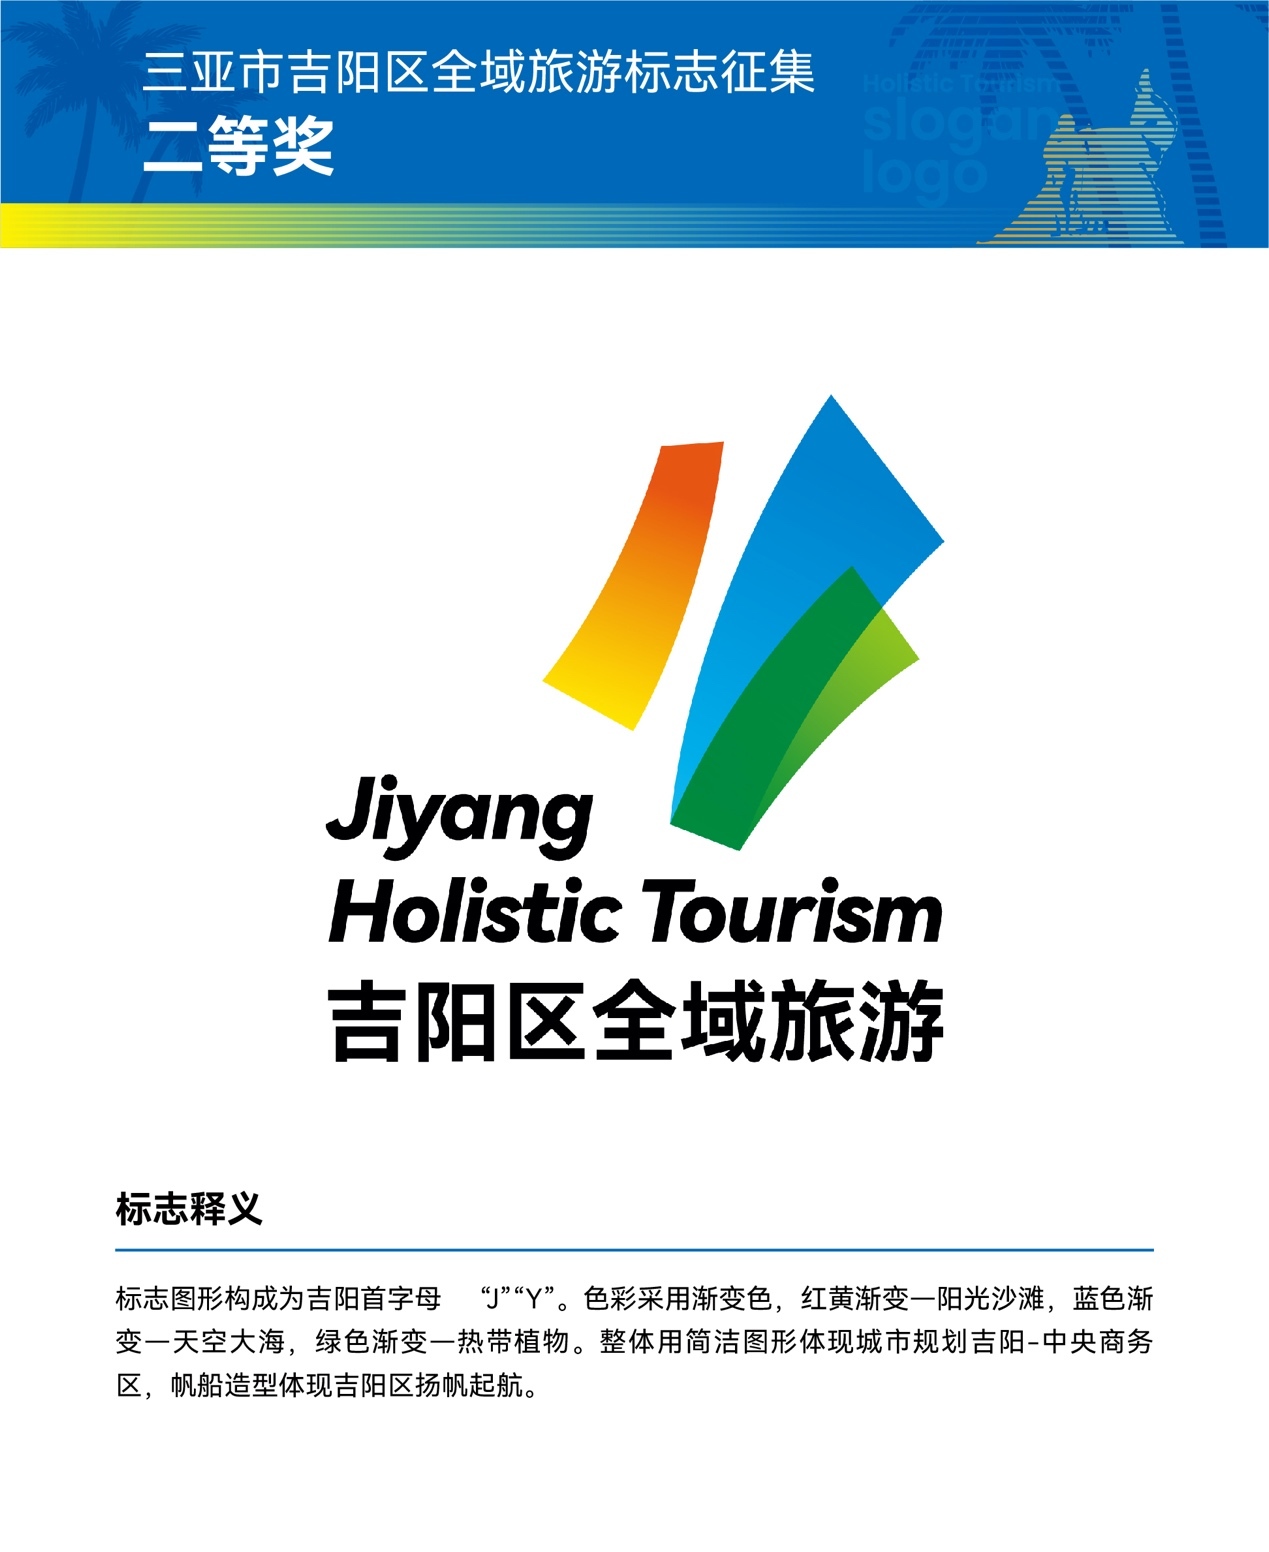 三亚市吉阳区 "2021全域旅游logo及口号征集活动" 评选结果隆重揭晓!